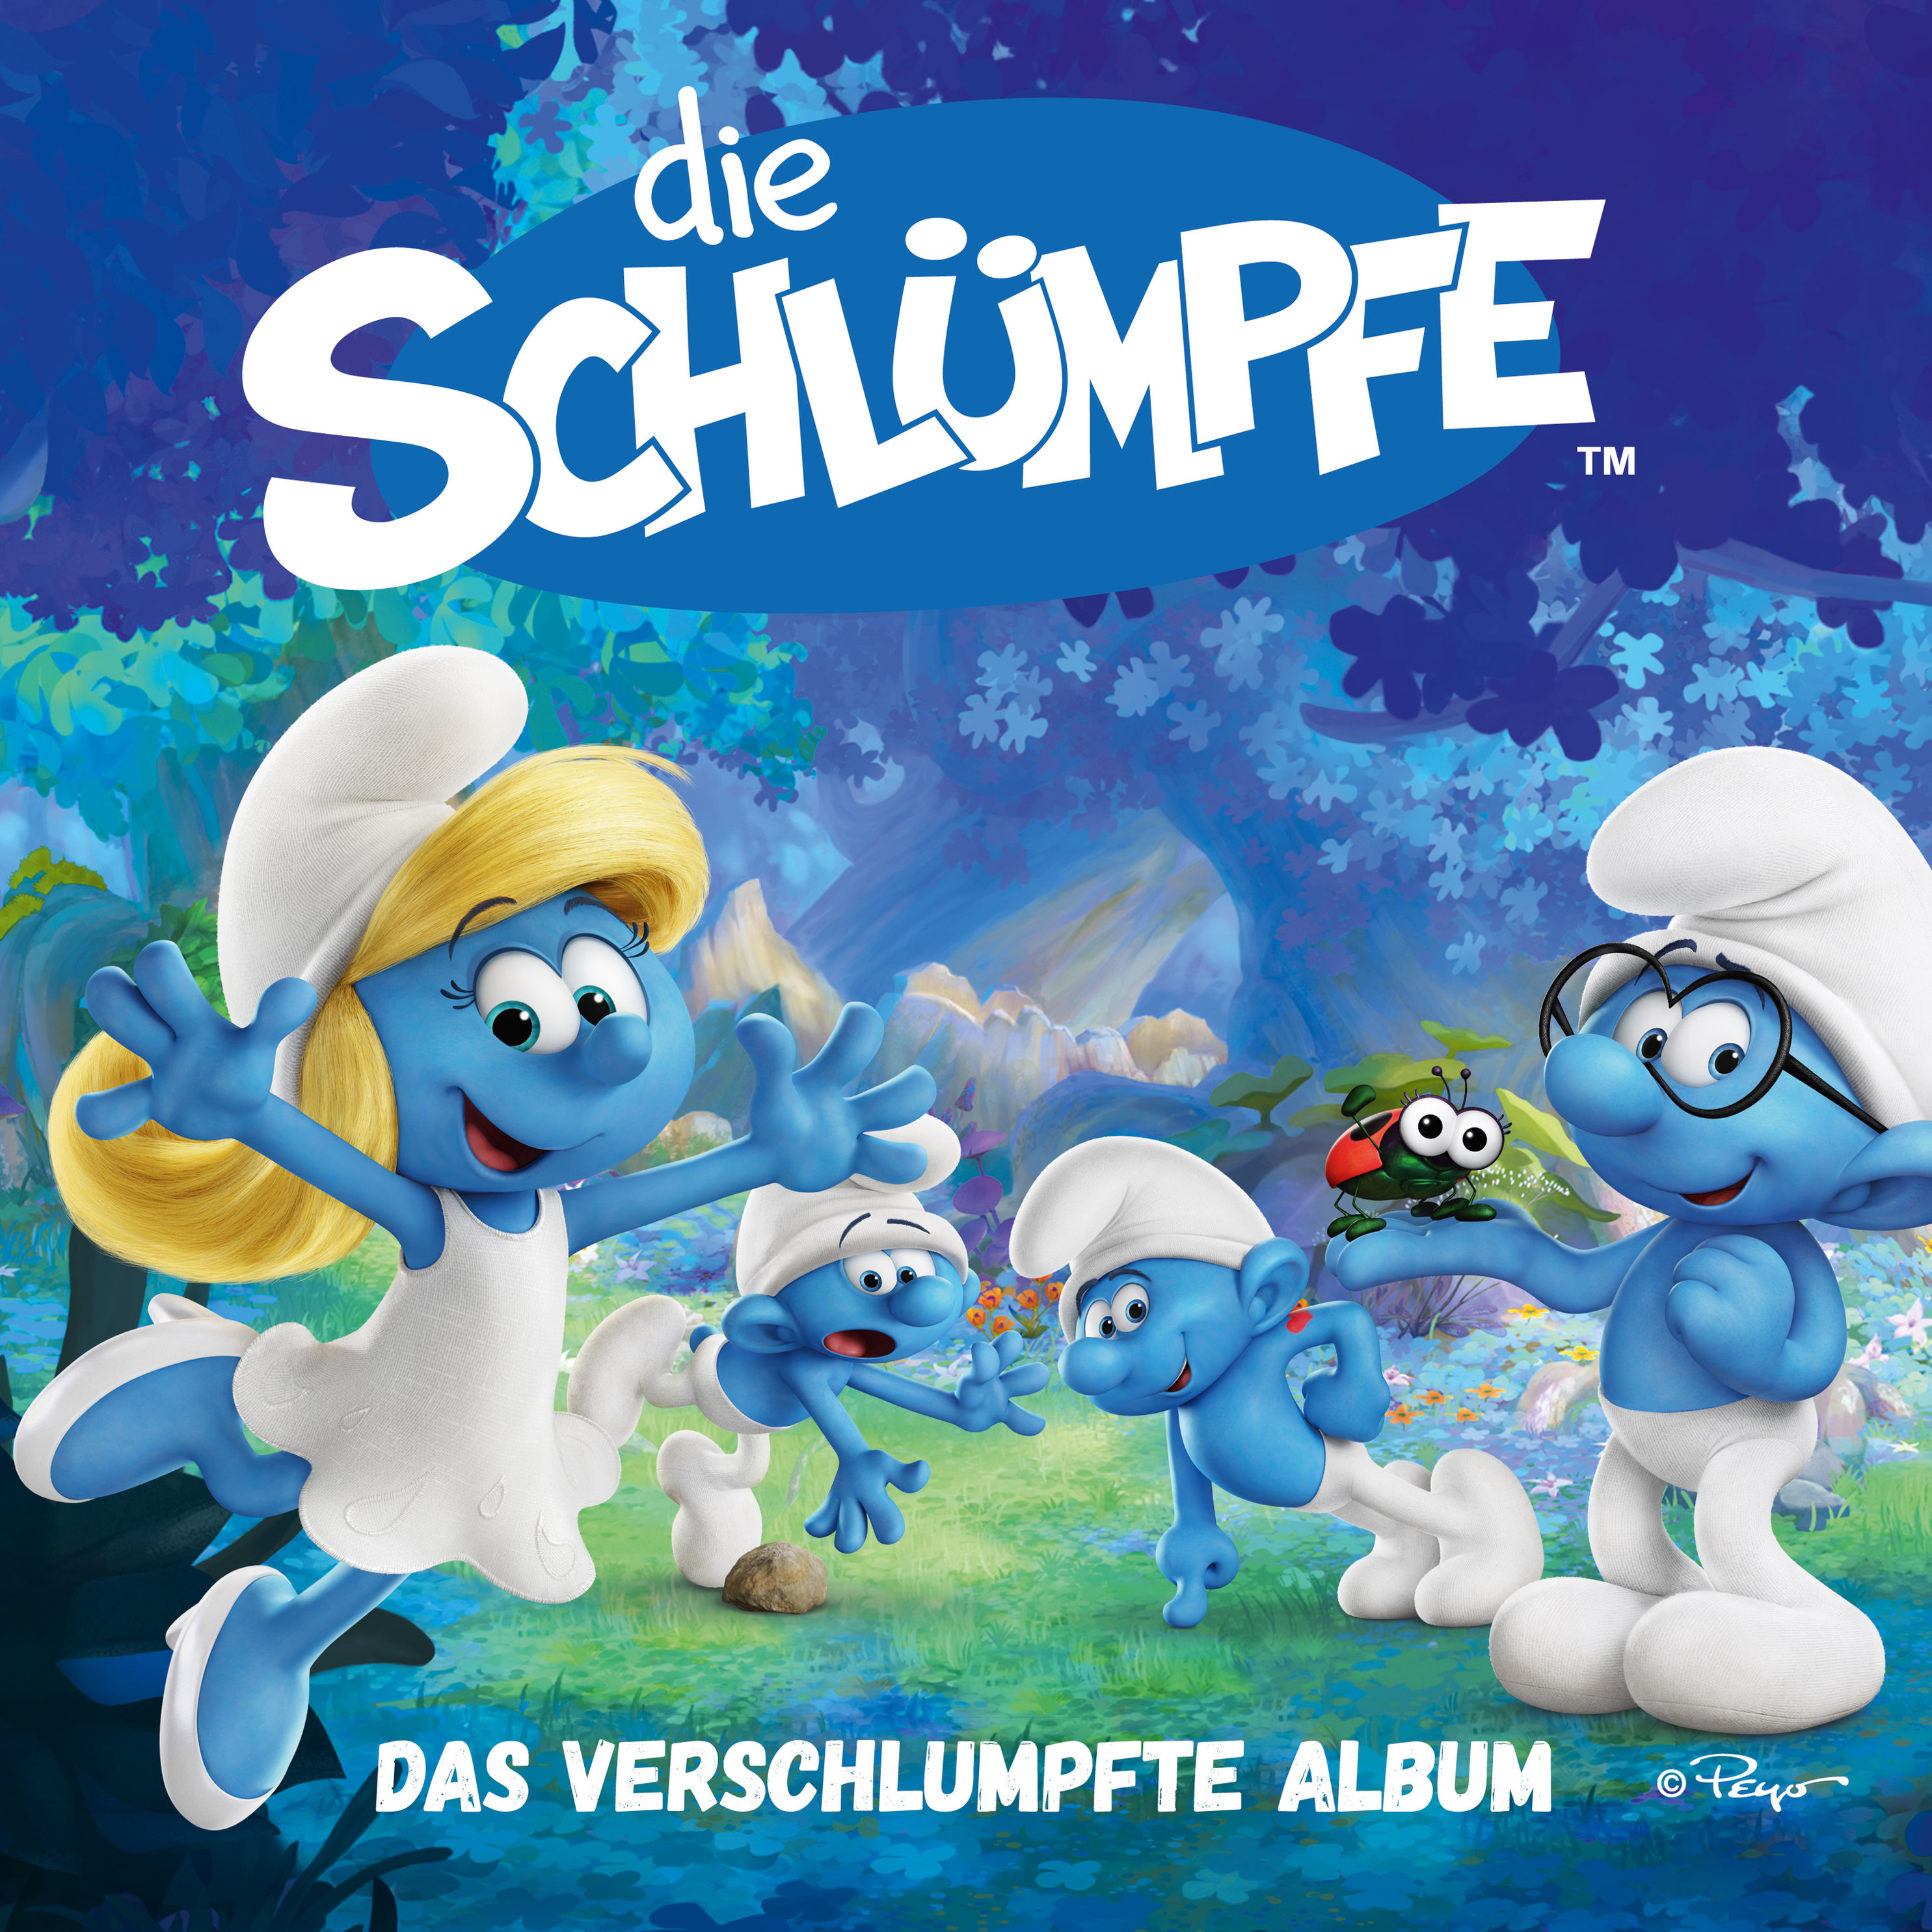 Das verschlumpfte Album CD von Die Schlümpfe bei Weltbild.de